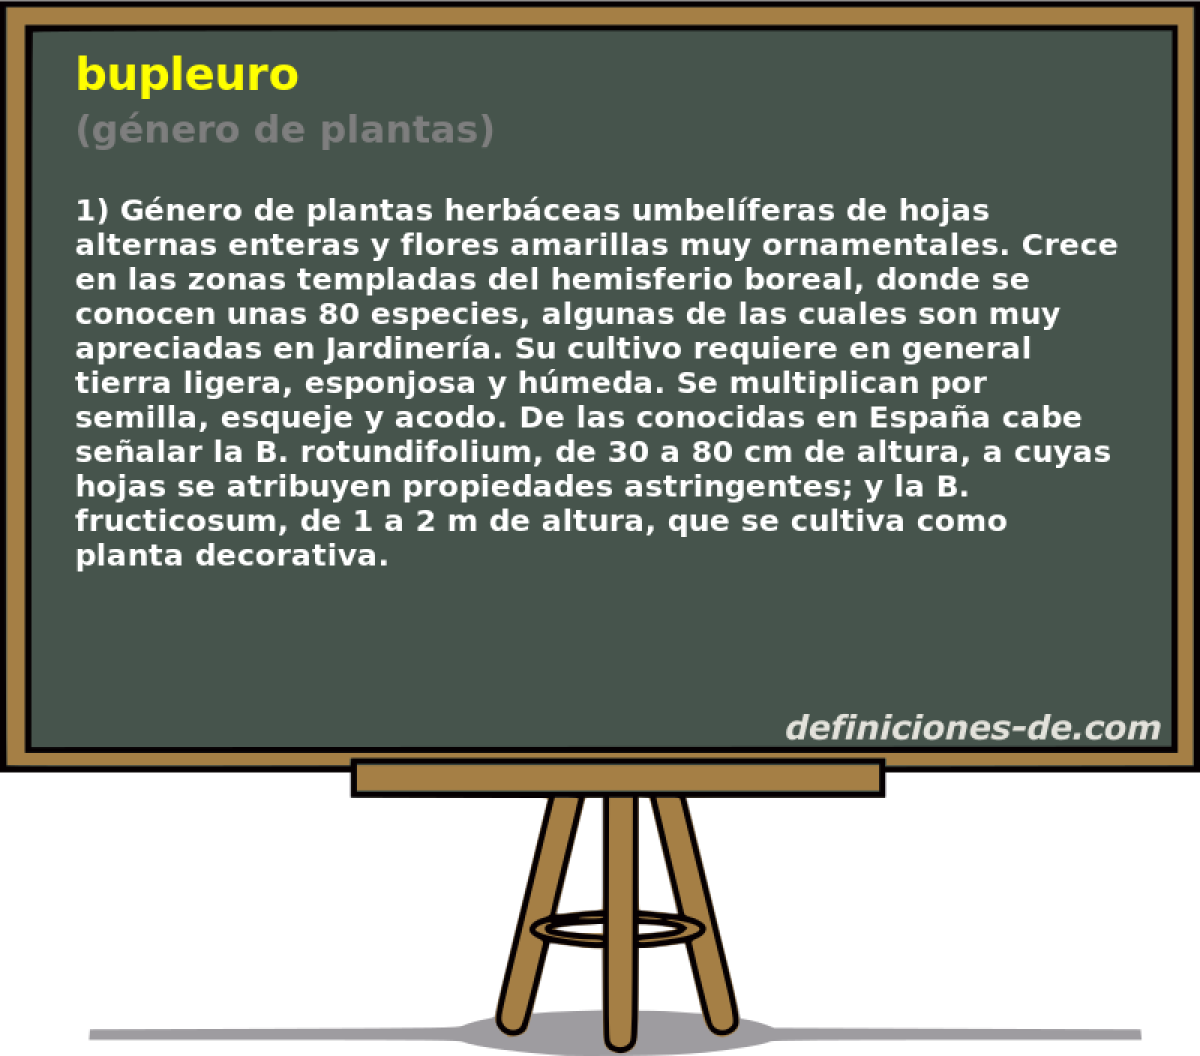 bupleuro (gnero de plantas)